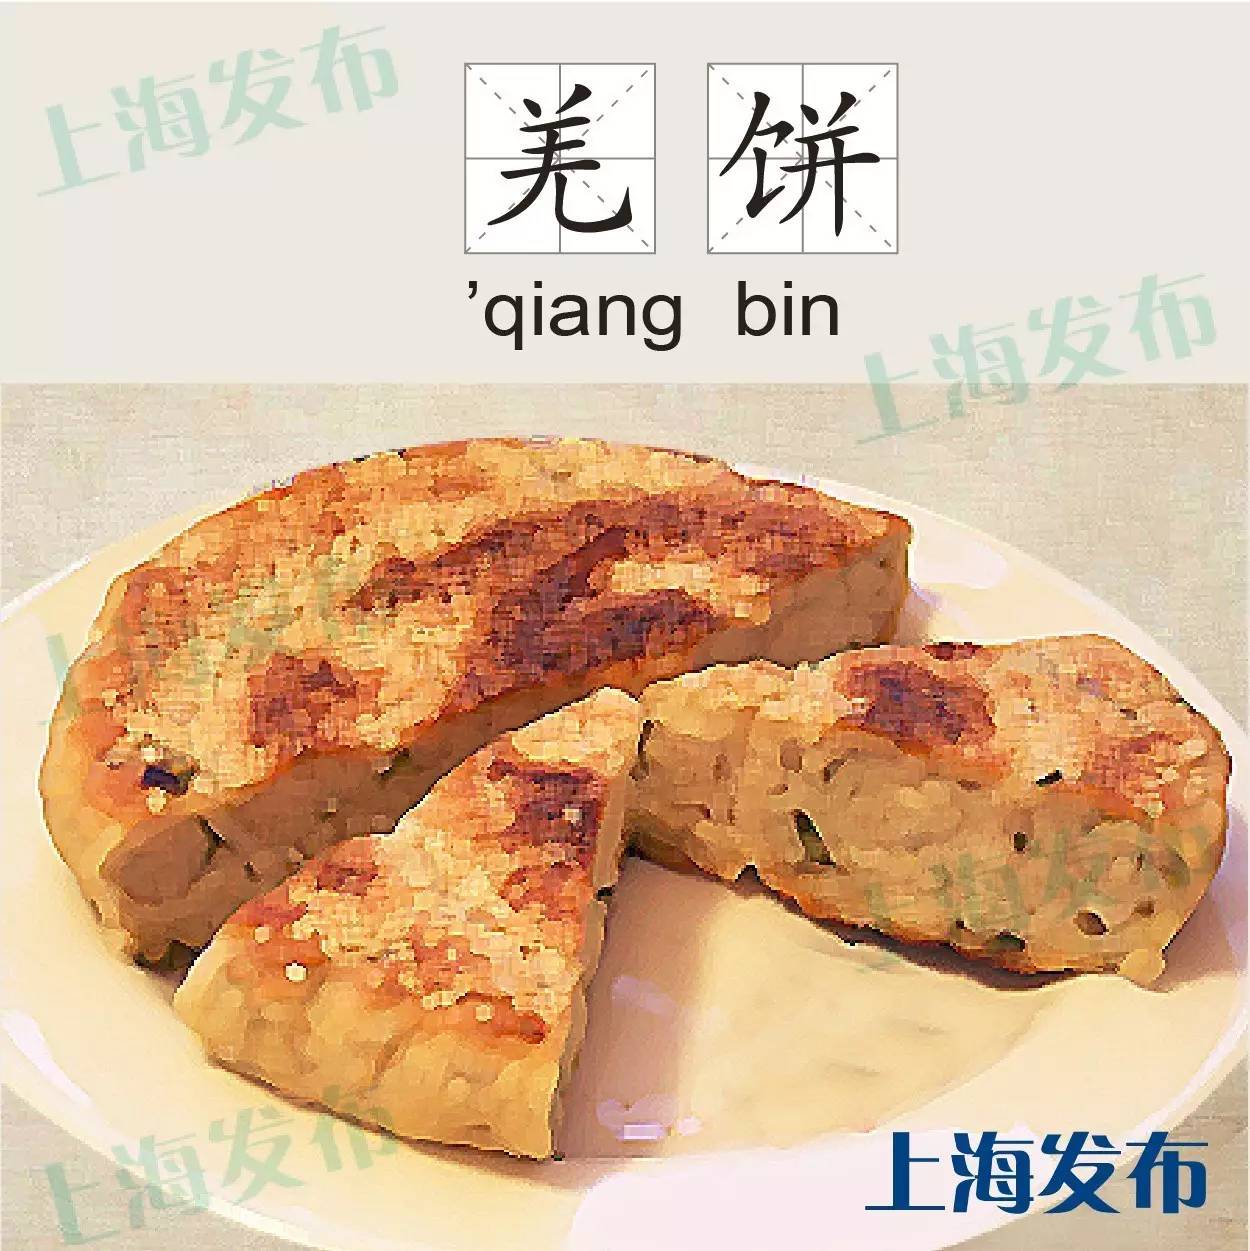 上海阿姨完美复刻老味道【油墩子】， 你的家乡肯定也有同款！_哔哩哔哩_bilibili